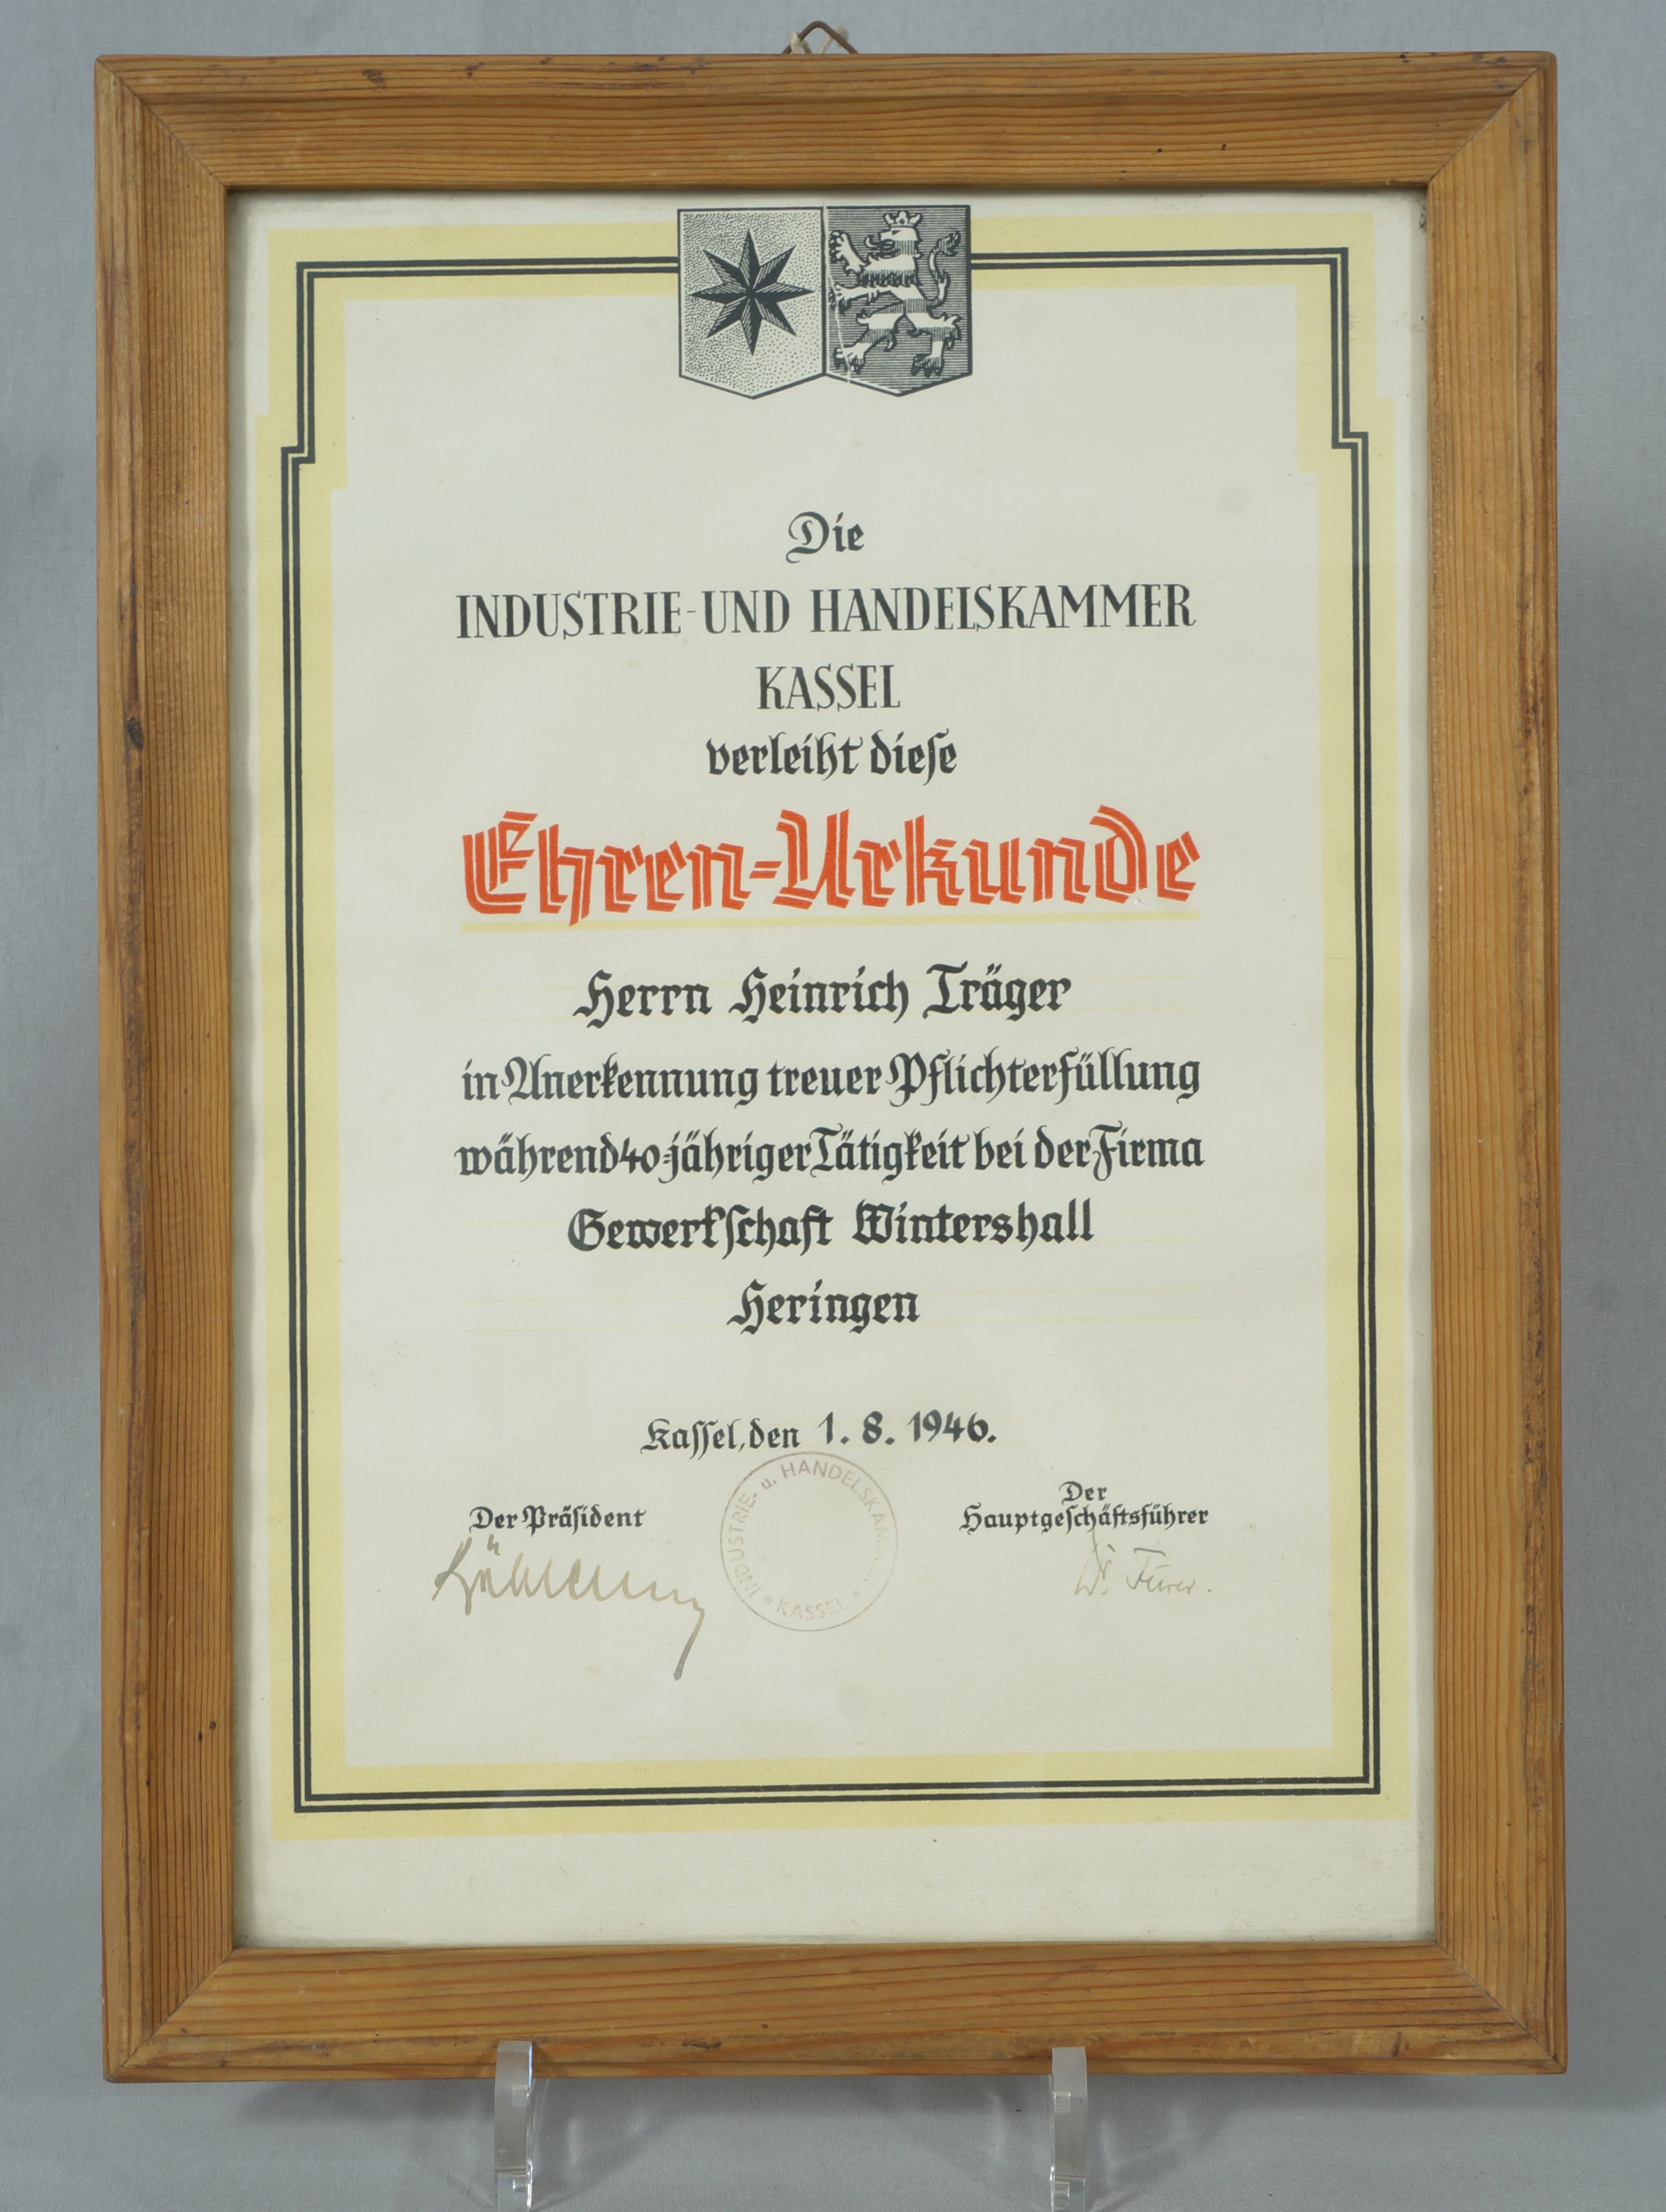 Urkunde zum 40-jährigen Dienstjubiläum bei der Gewerkschaft Wintershall (IHK) (Werra-Kalibergbau-Museum, Heringen/W. CC BY-NC-SA)